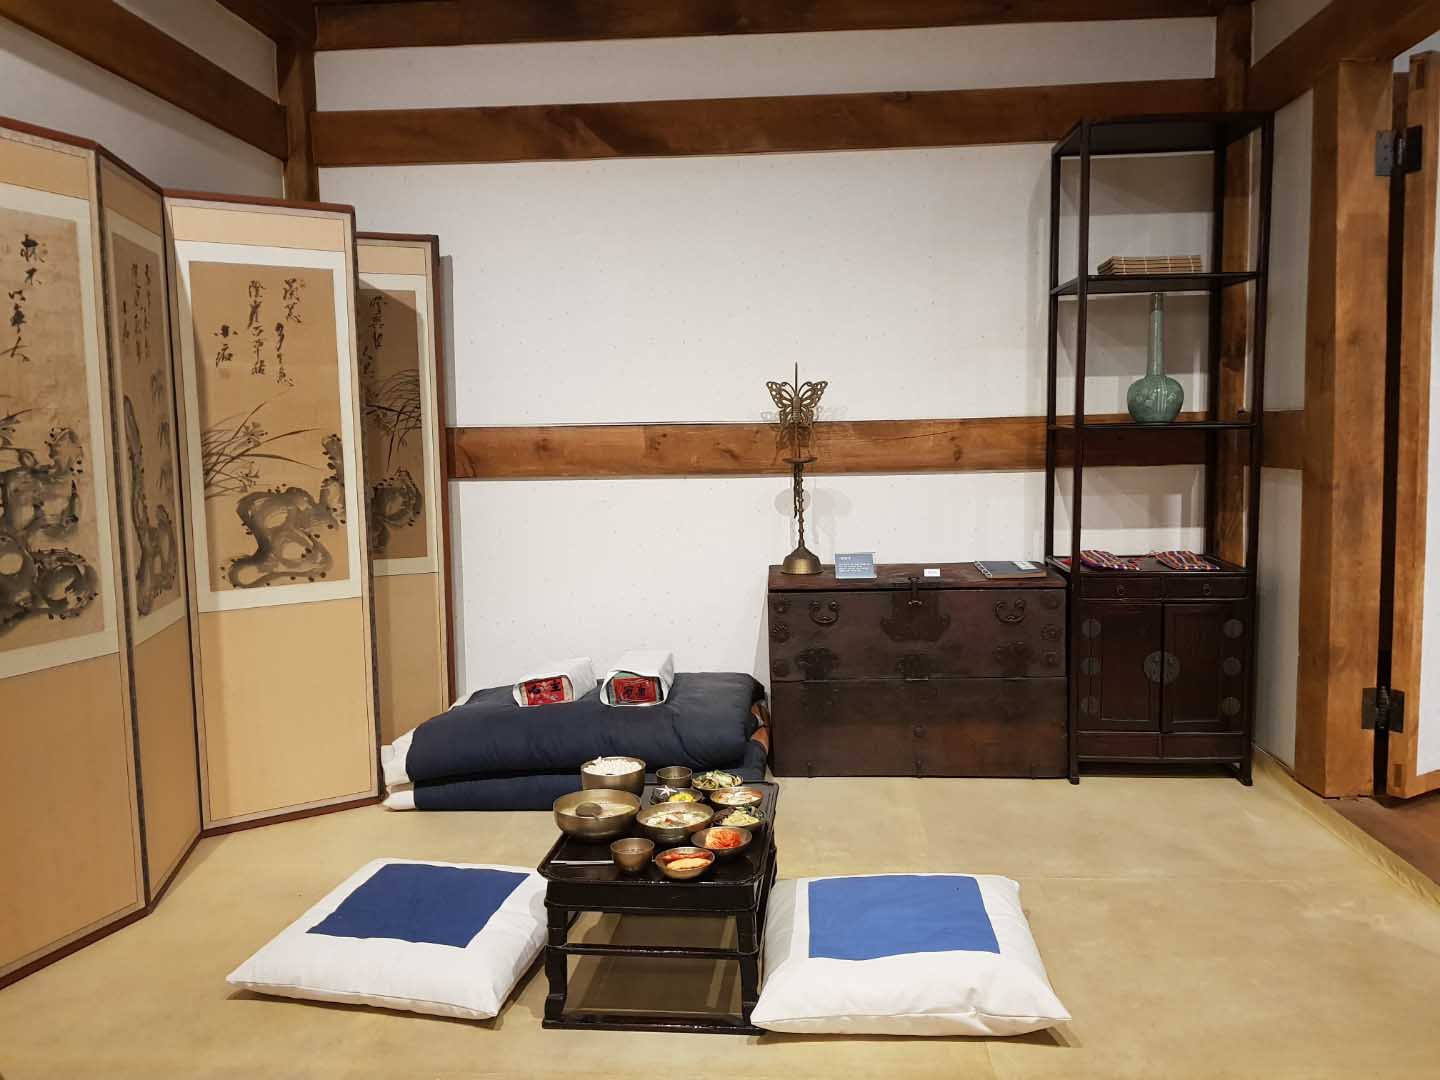 조선시대 생활공간을 재현한 전시관